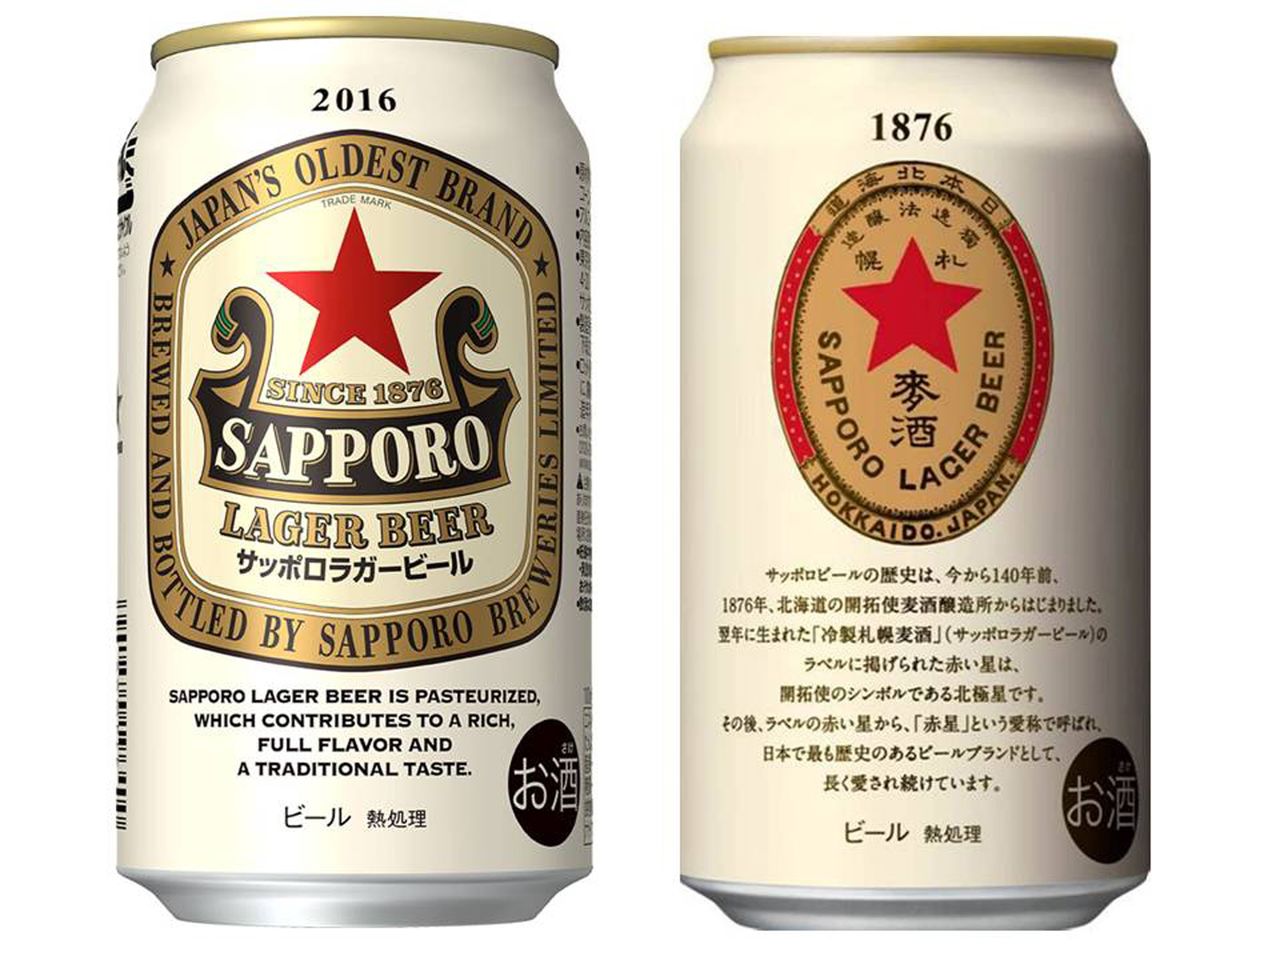 Una estrella roja ilumina la versión especial de la cerveza Sapporo Lager, disponible como producto de edición limitada. (Jiji Press)